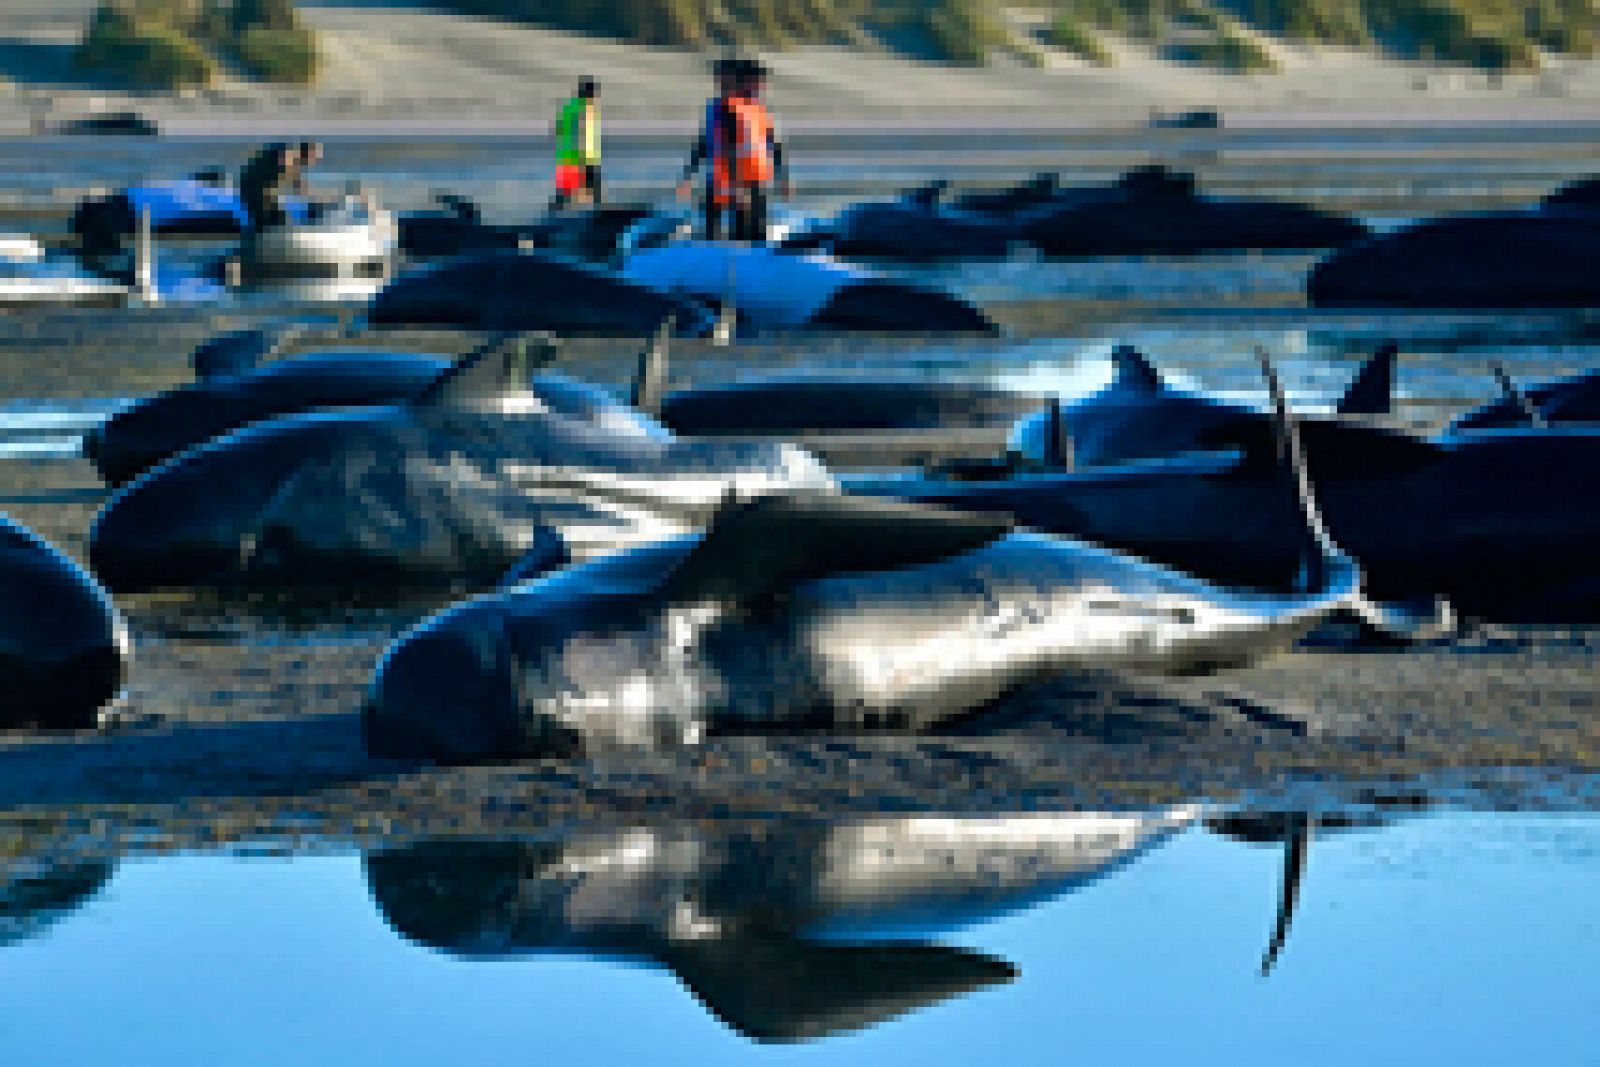 Los cadáveres de 300 ballenas varadas en Nueva Zelanda podrían estallar por acumulación de gases